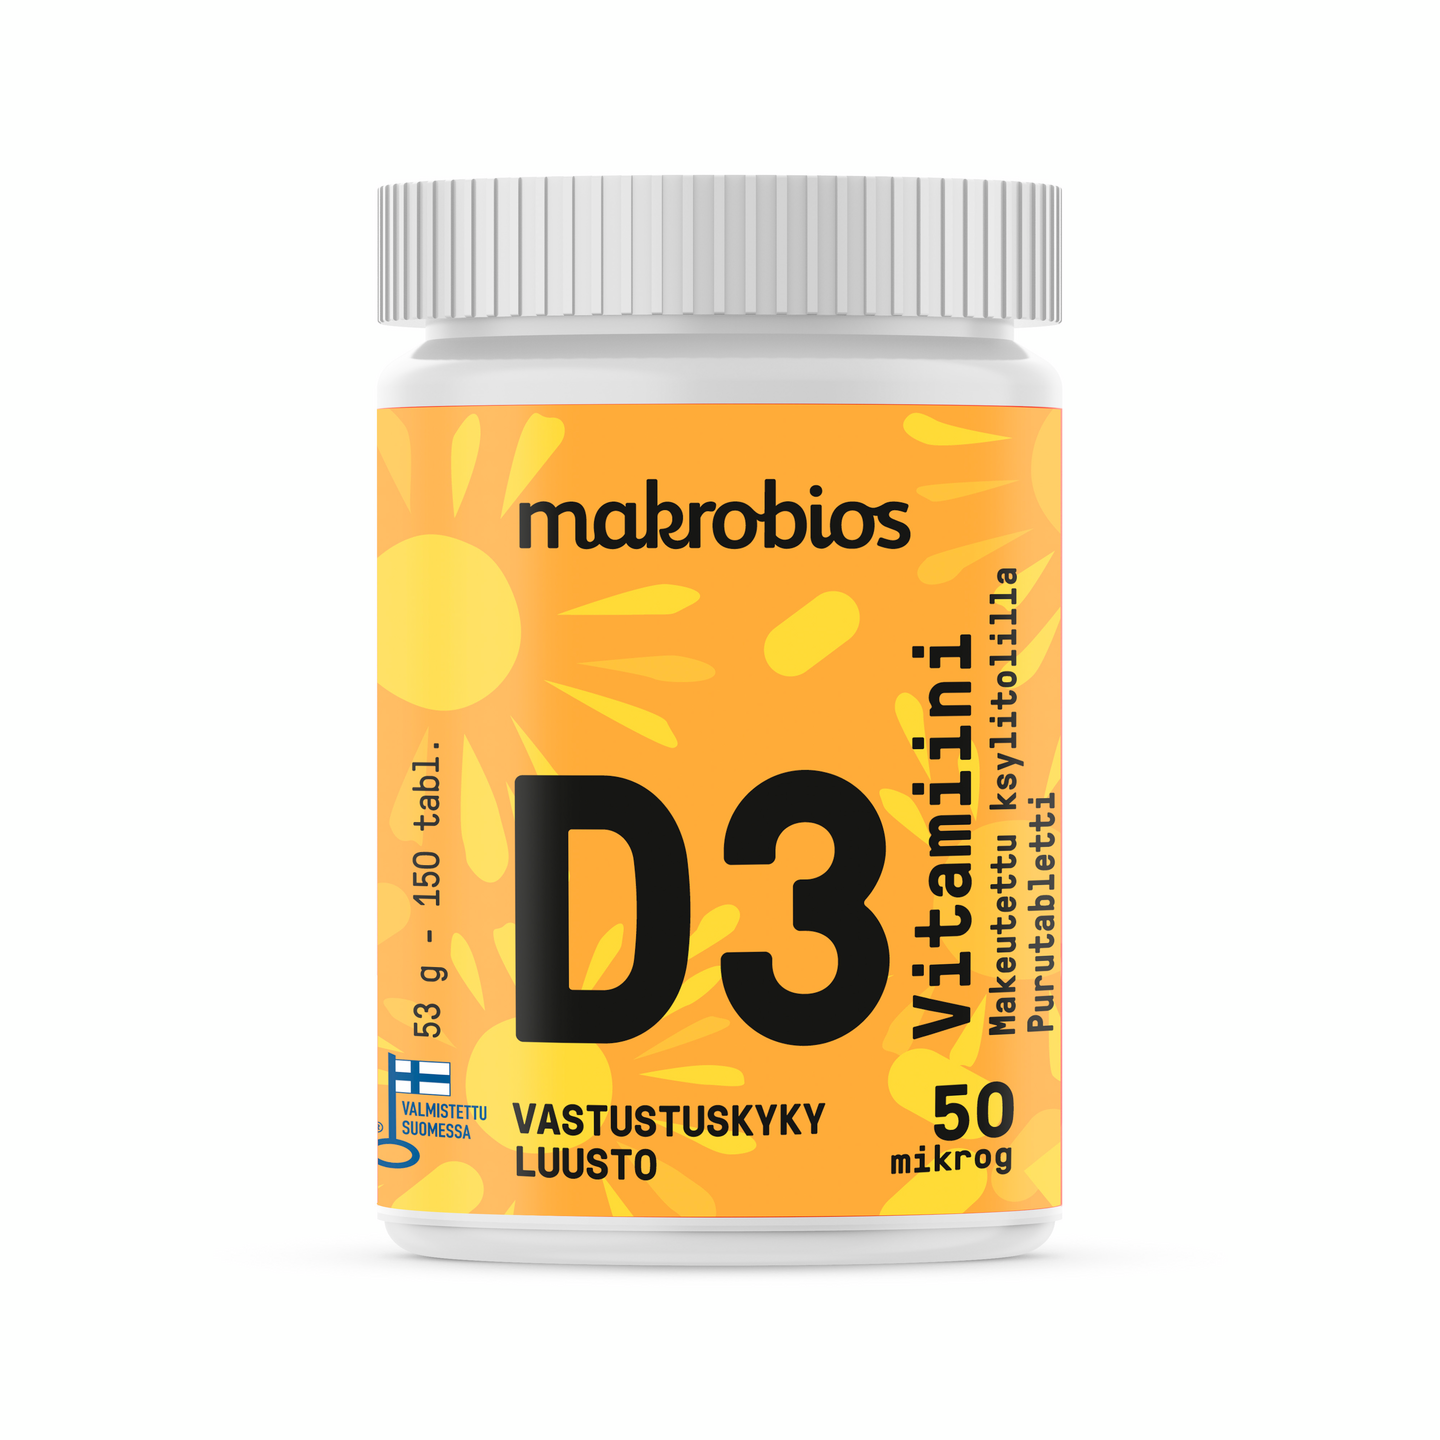 MakroBios D vitamiini 150tabl 53g